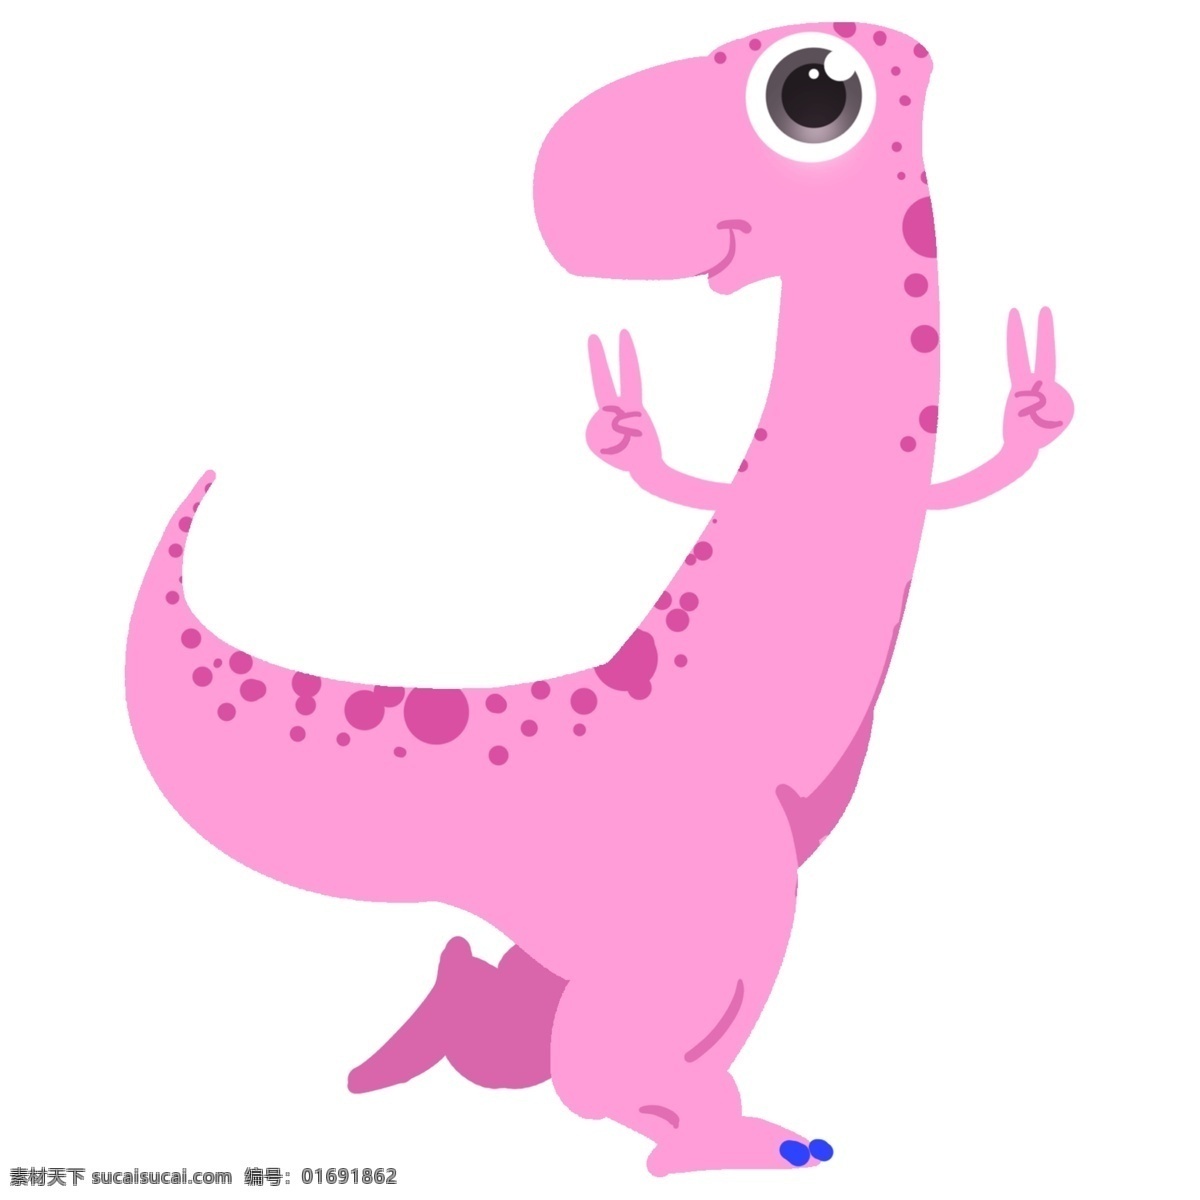 开心 恐龙 装饰 插画 开心的恐龙 可爱的恐龙 粉色的恐龙 创意恐龙 恐龙装饰 恐龙插画 立体恐龙